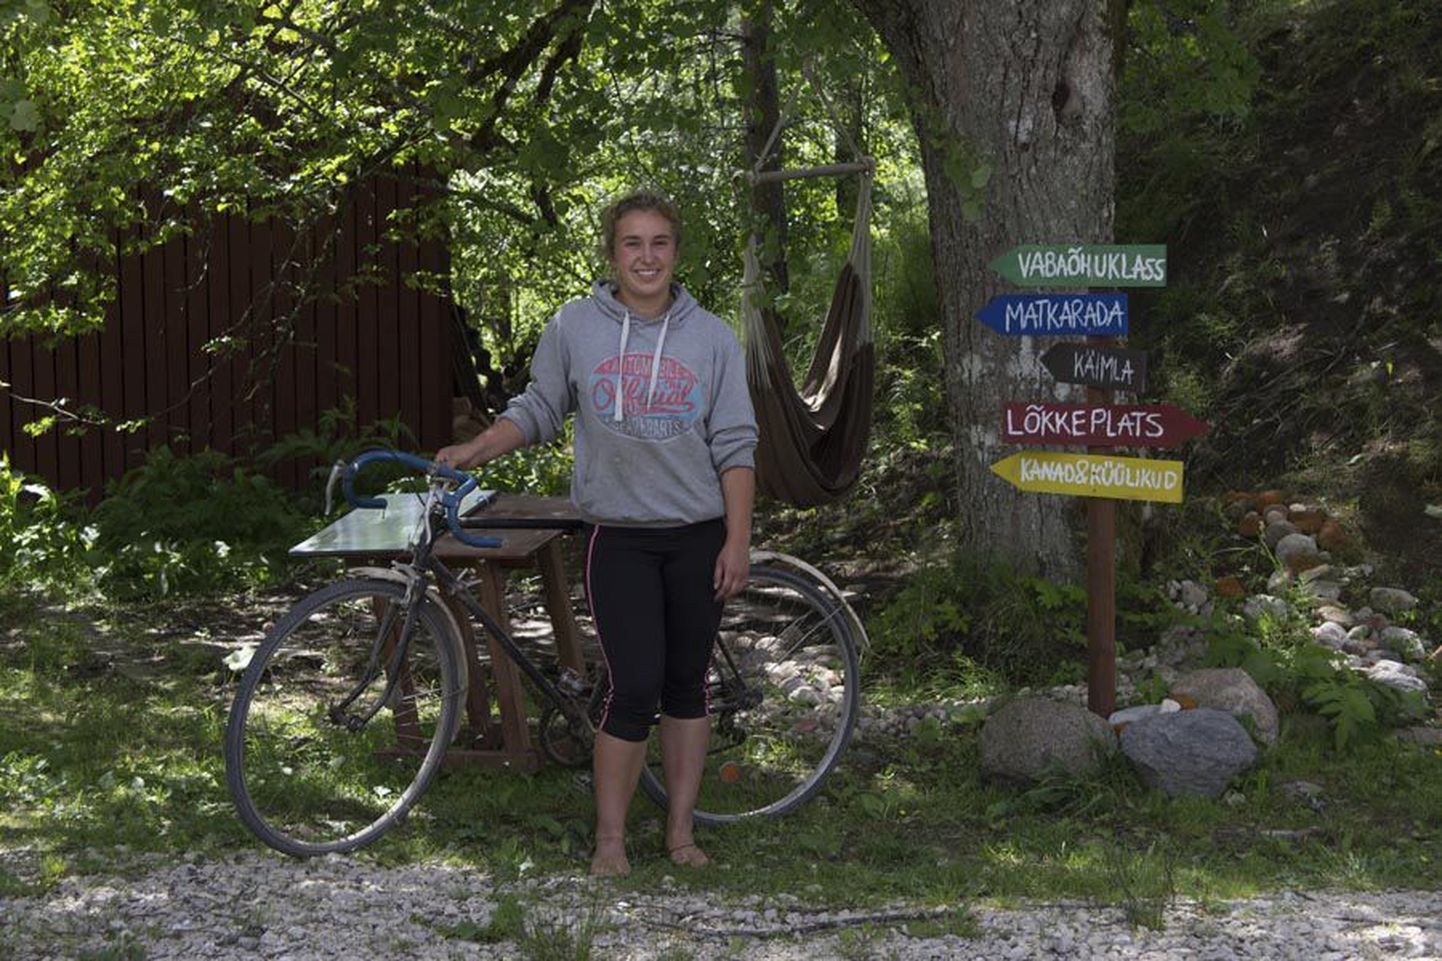 19-aastane Dresdeni neiu võtab ette 2600-kilomeetrise kodutee jalgratta seljas. Kui ta Eestist reisikaaslasi ei leia, alustab ta rattamatka üksi.